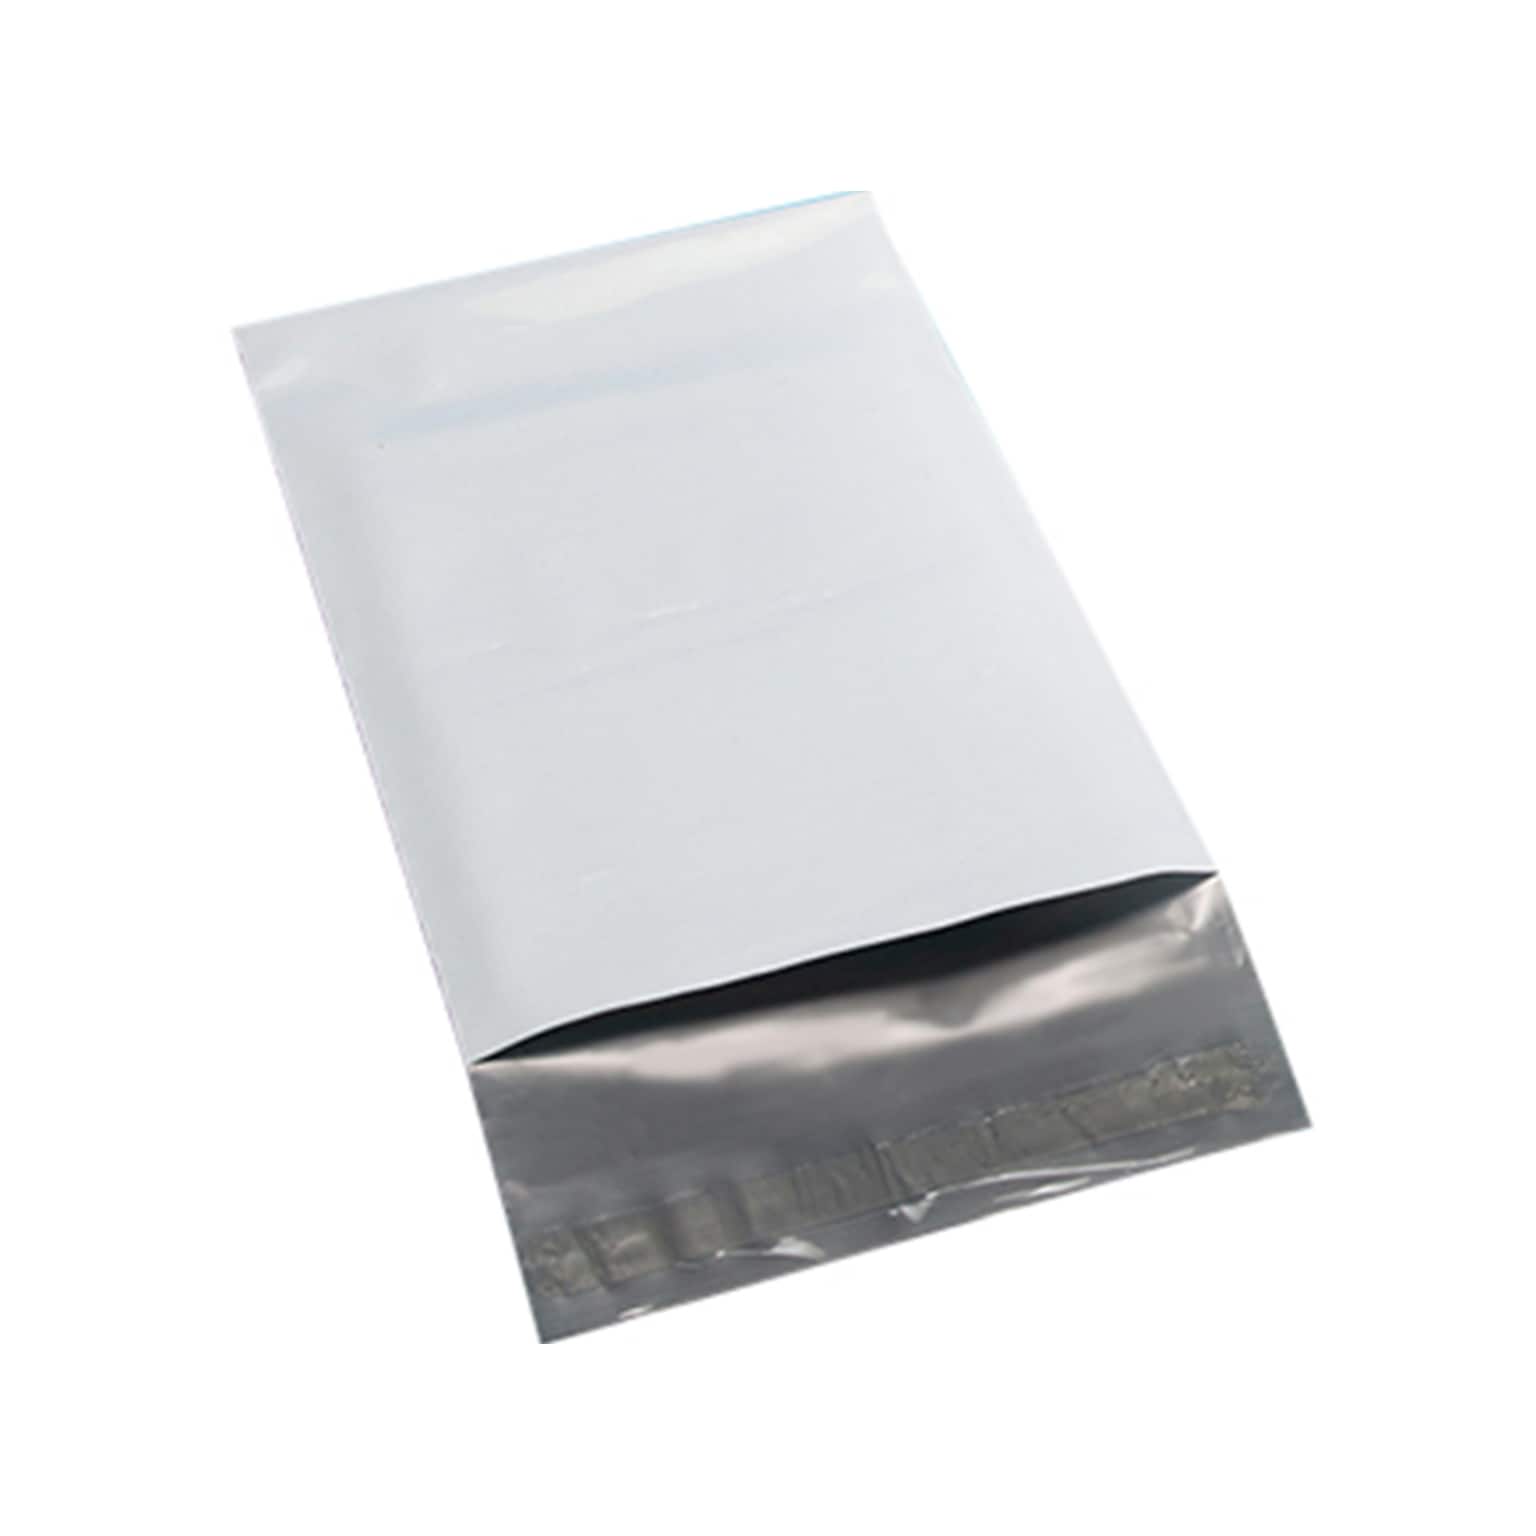 19 x 24 Lay Flat Self-Sealing Poly Mailer, 200/Carton (5185)